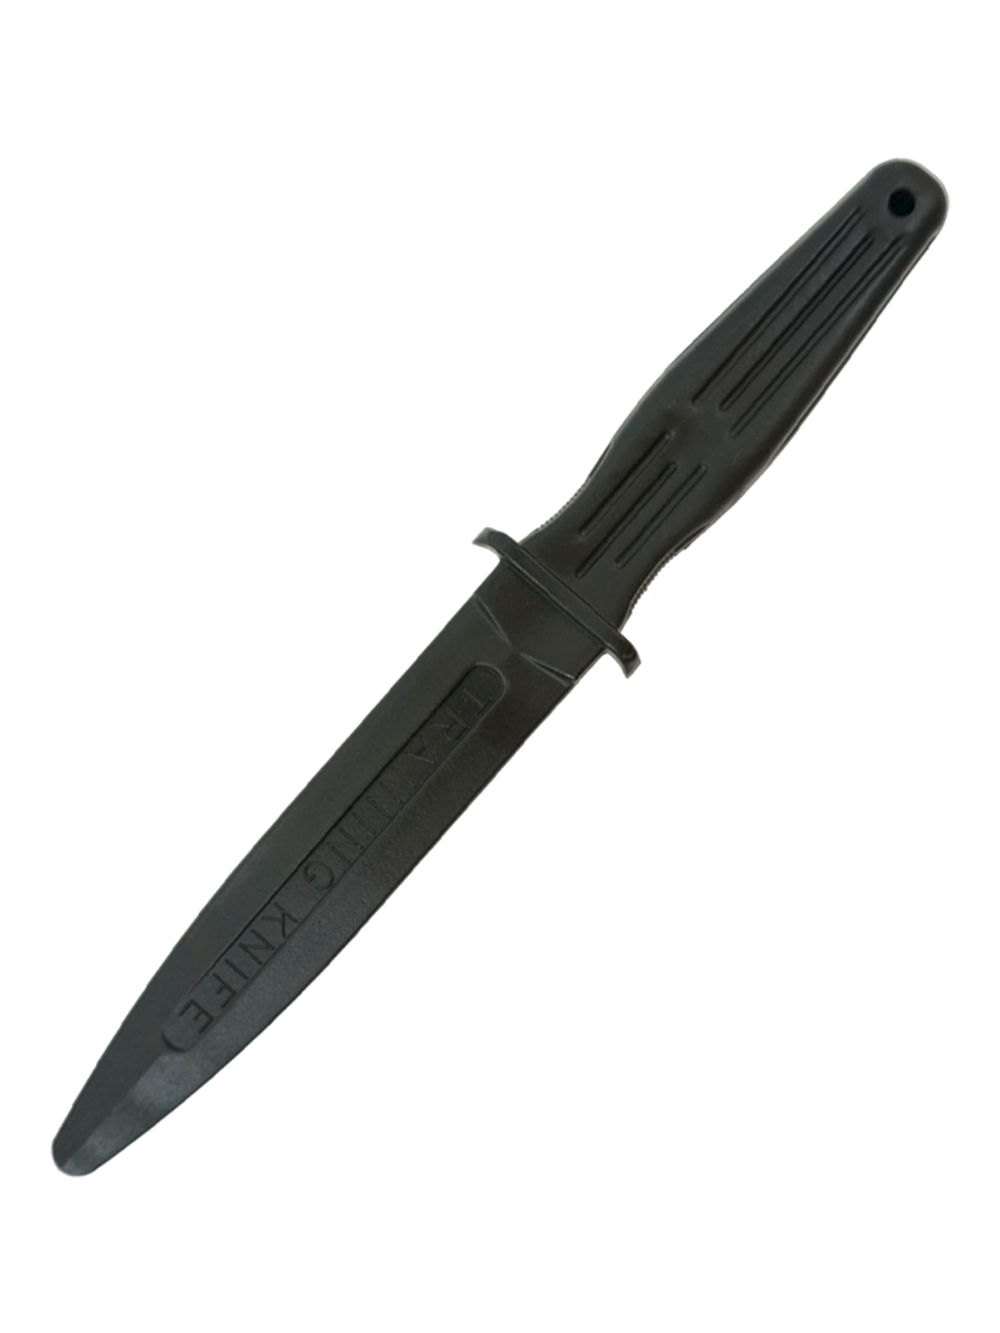 Нож тренировочный (резиновый) Штык обоюдоострый